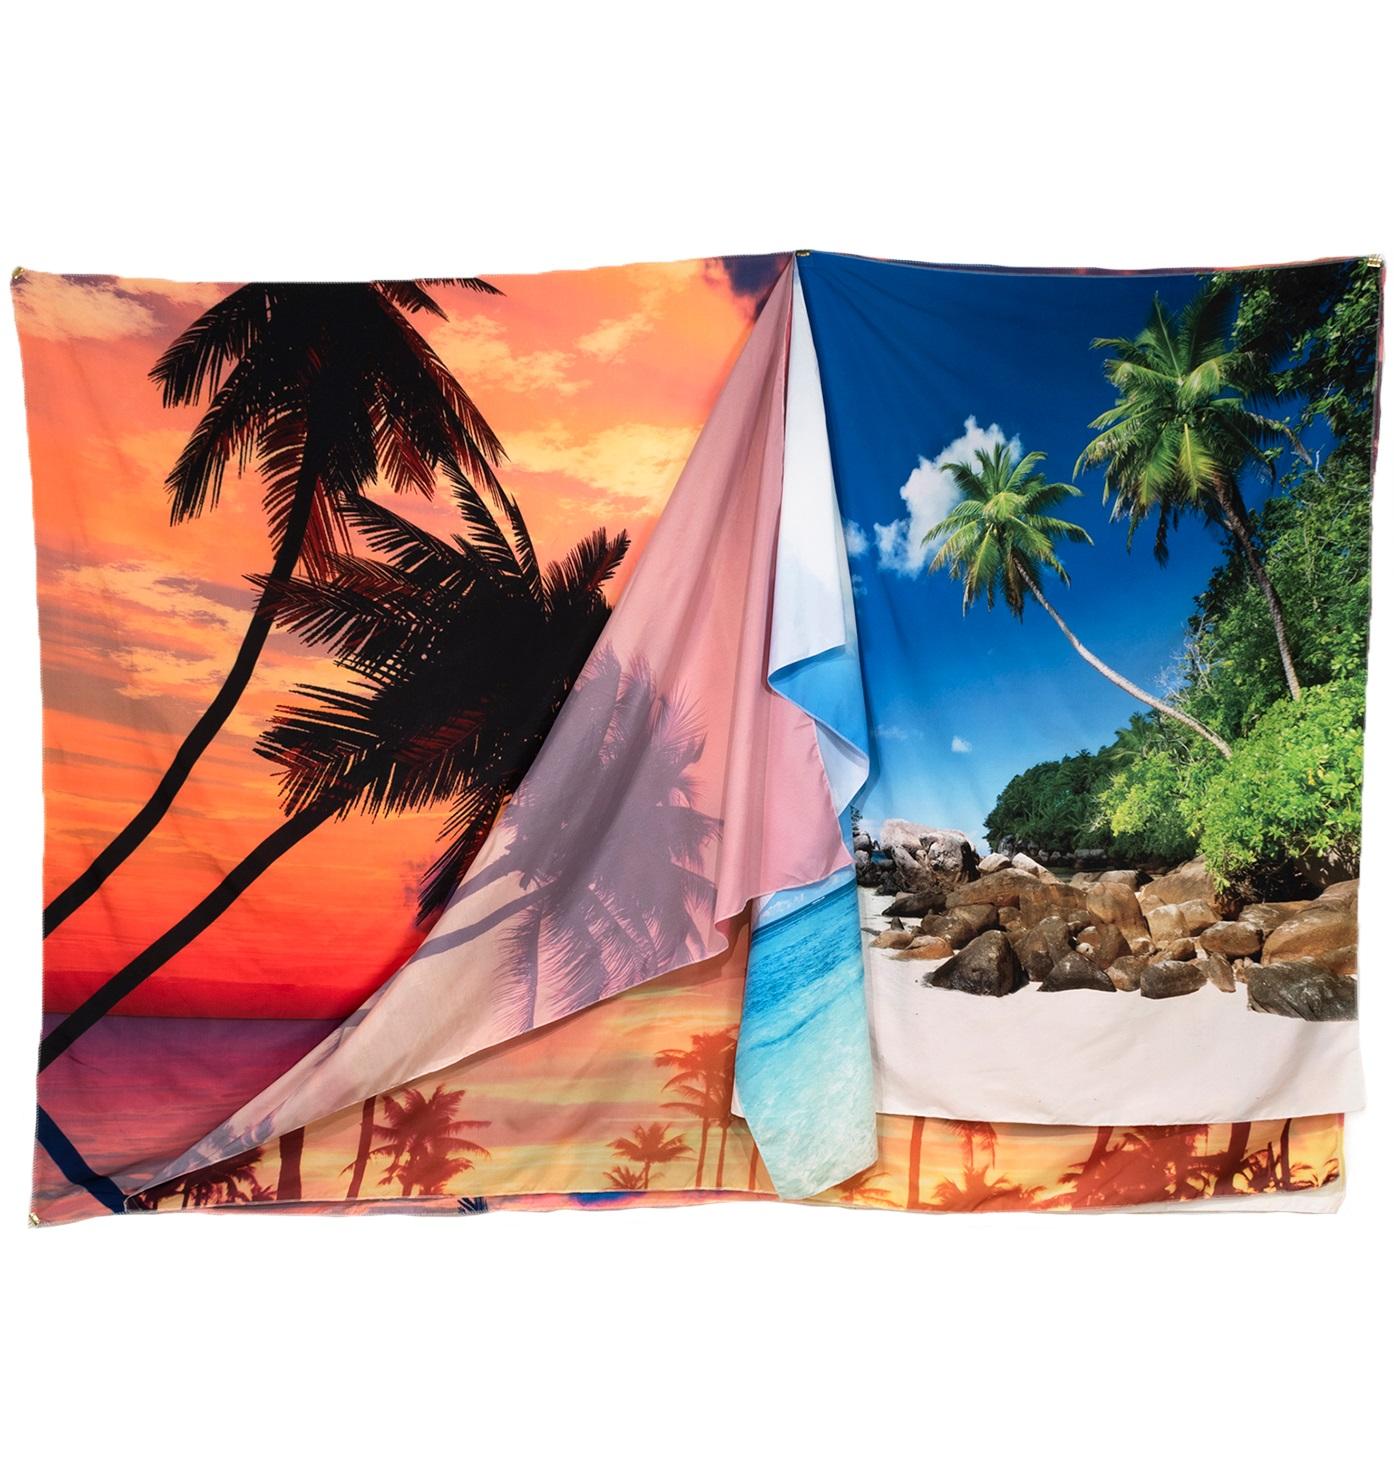 AS FAR AS A VIEW - Folded Tapestry Collage vonszenischen Landschaften mit Palmenbäumen